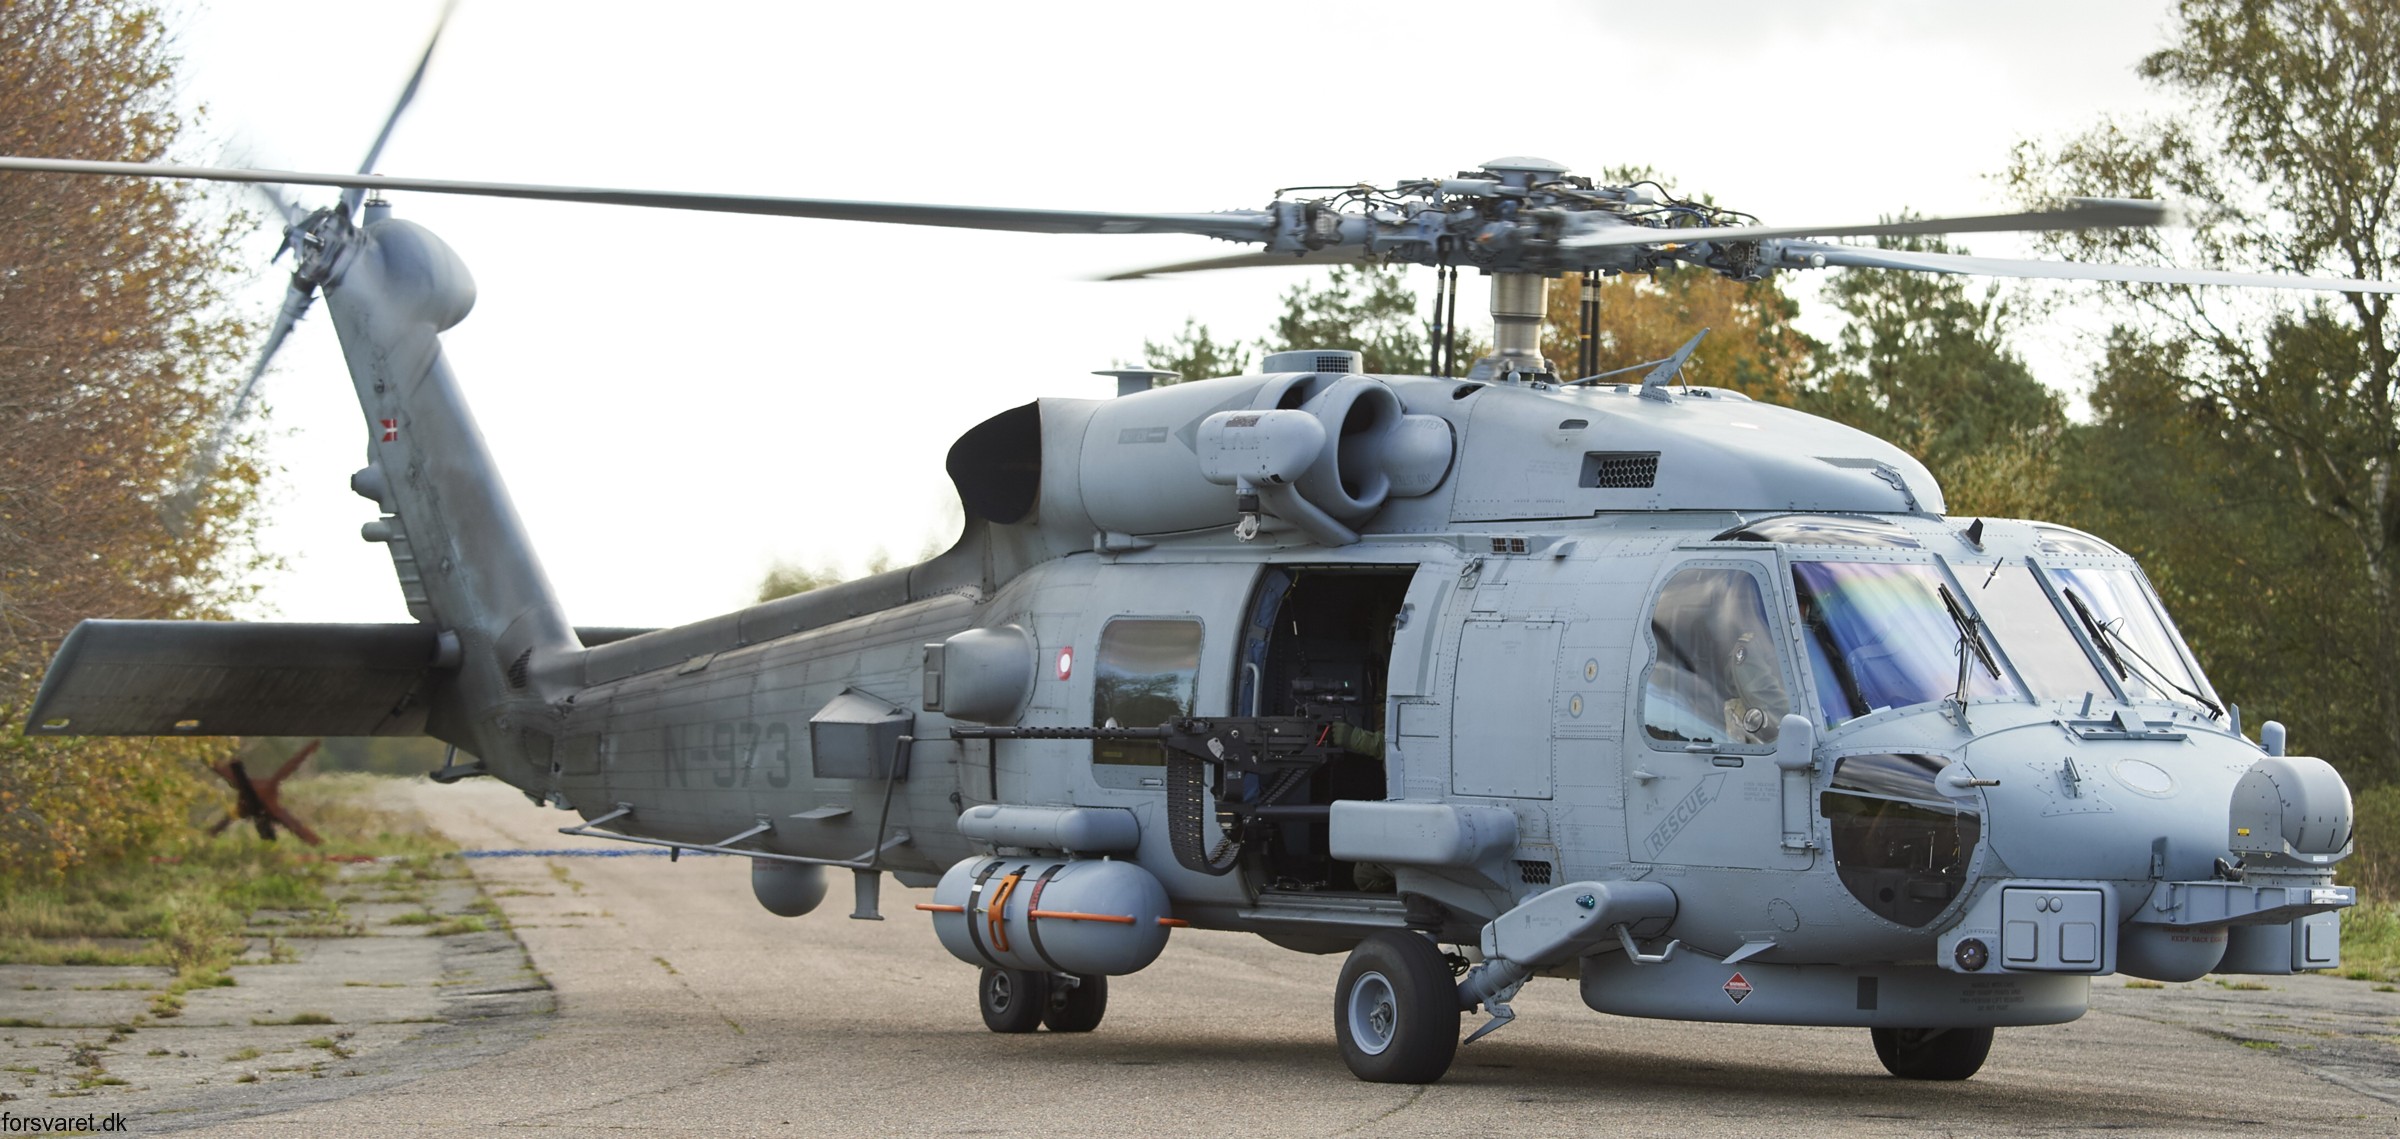 mh-60r seahawk royal danish navy air force flyvevåbnet kongelige danske marine sikorsky helicopter 723 eskadrille squadron karup 30